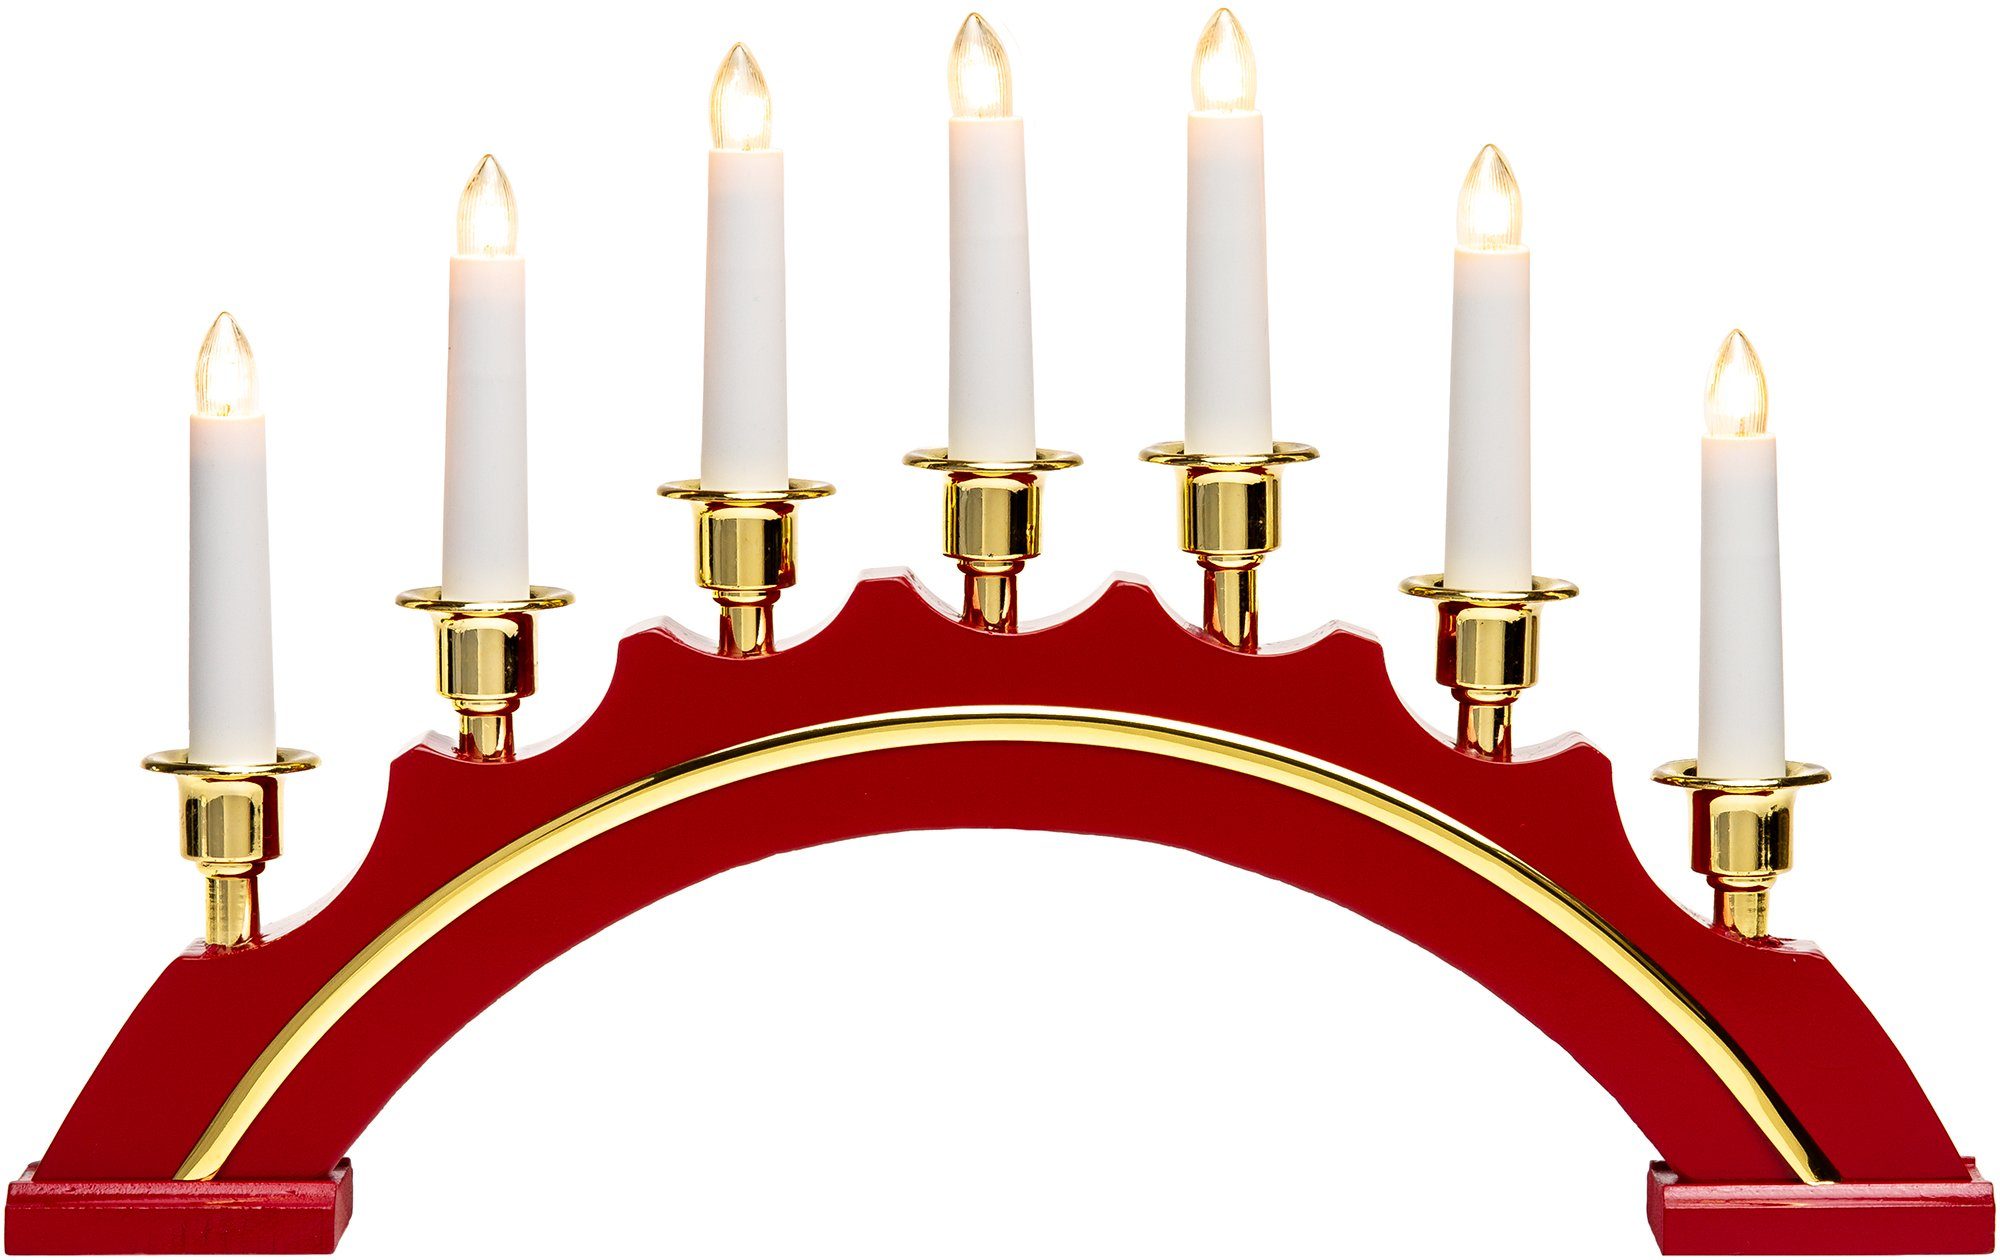 SIKORA Schwibbogen LB64 halbrunder Lichterbogen mit 7 elektrischen Kerzen und Golddekor